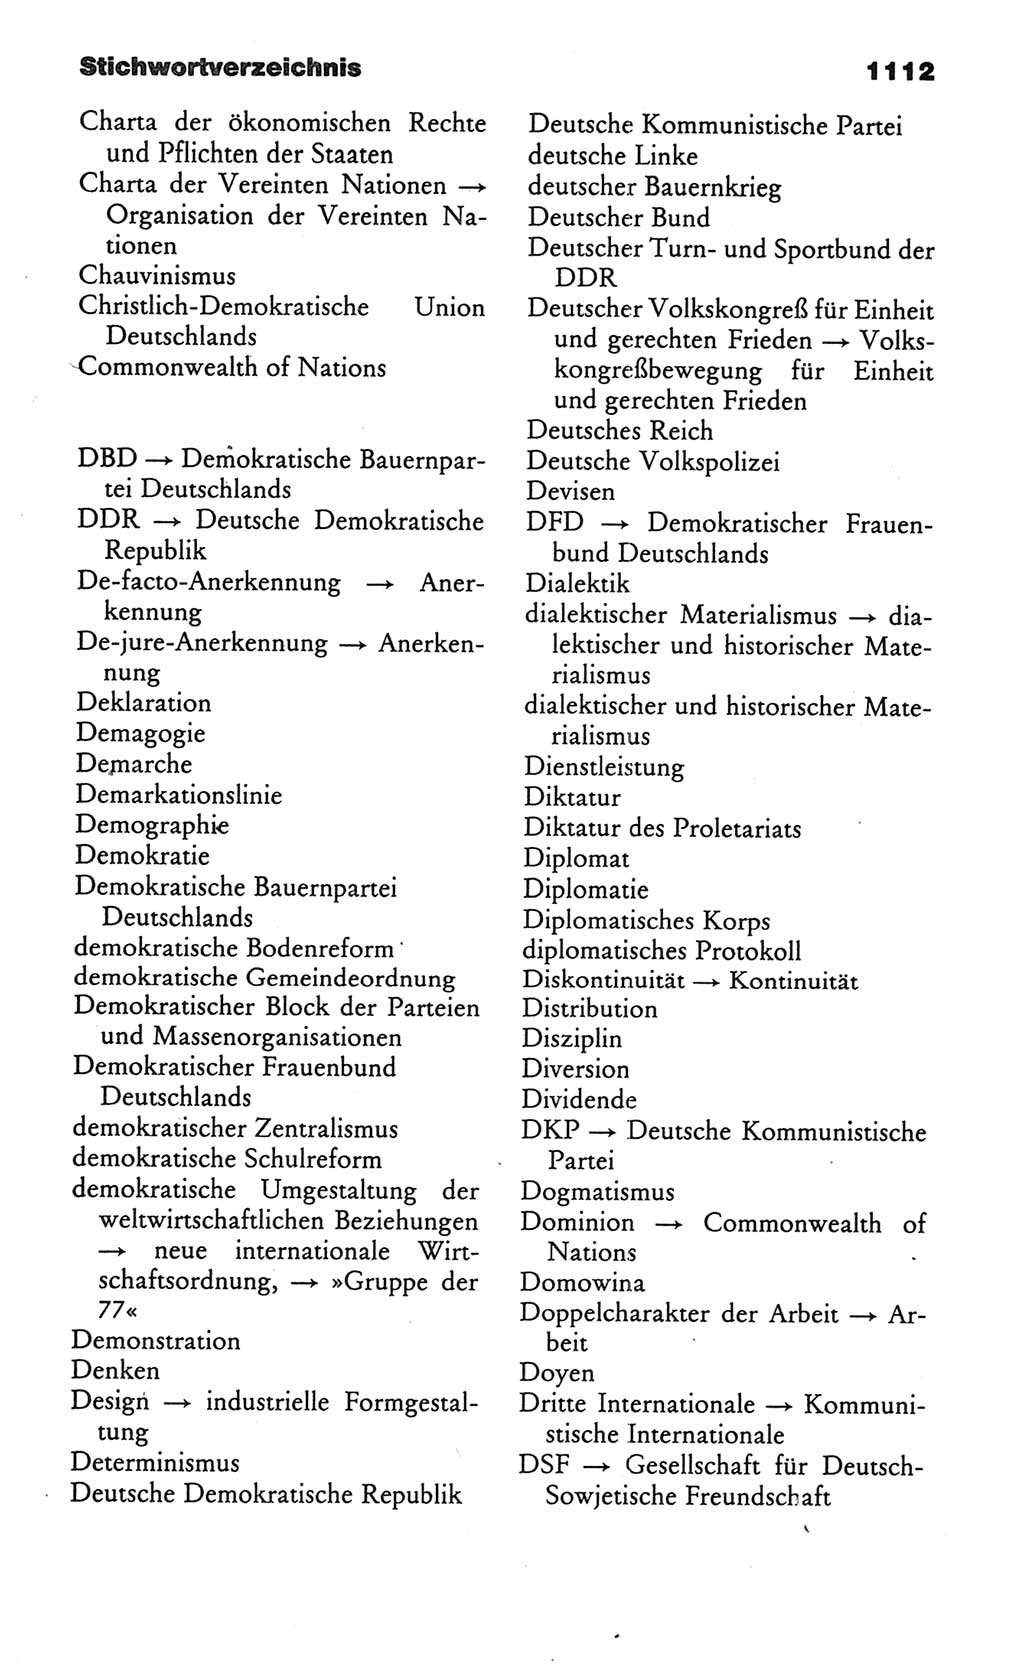 Kleines politisches Wörterbuch [Deutsche Demokratische Republik (DDR)] 1986, Seite 1112 (Kl. pol. Wb. DDR 1986, S. 1112)